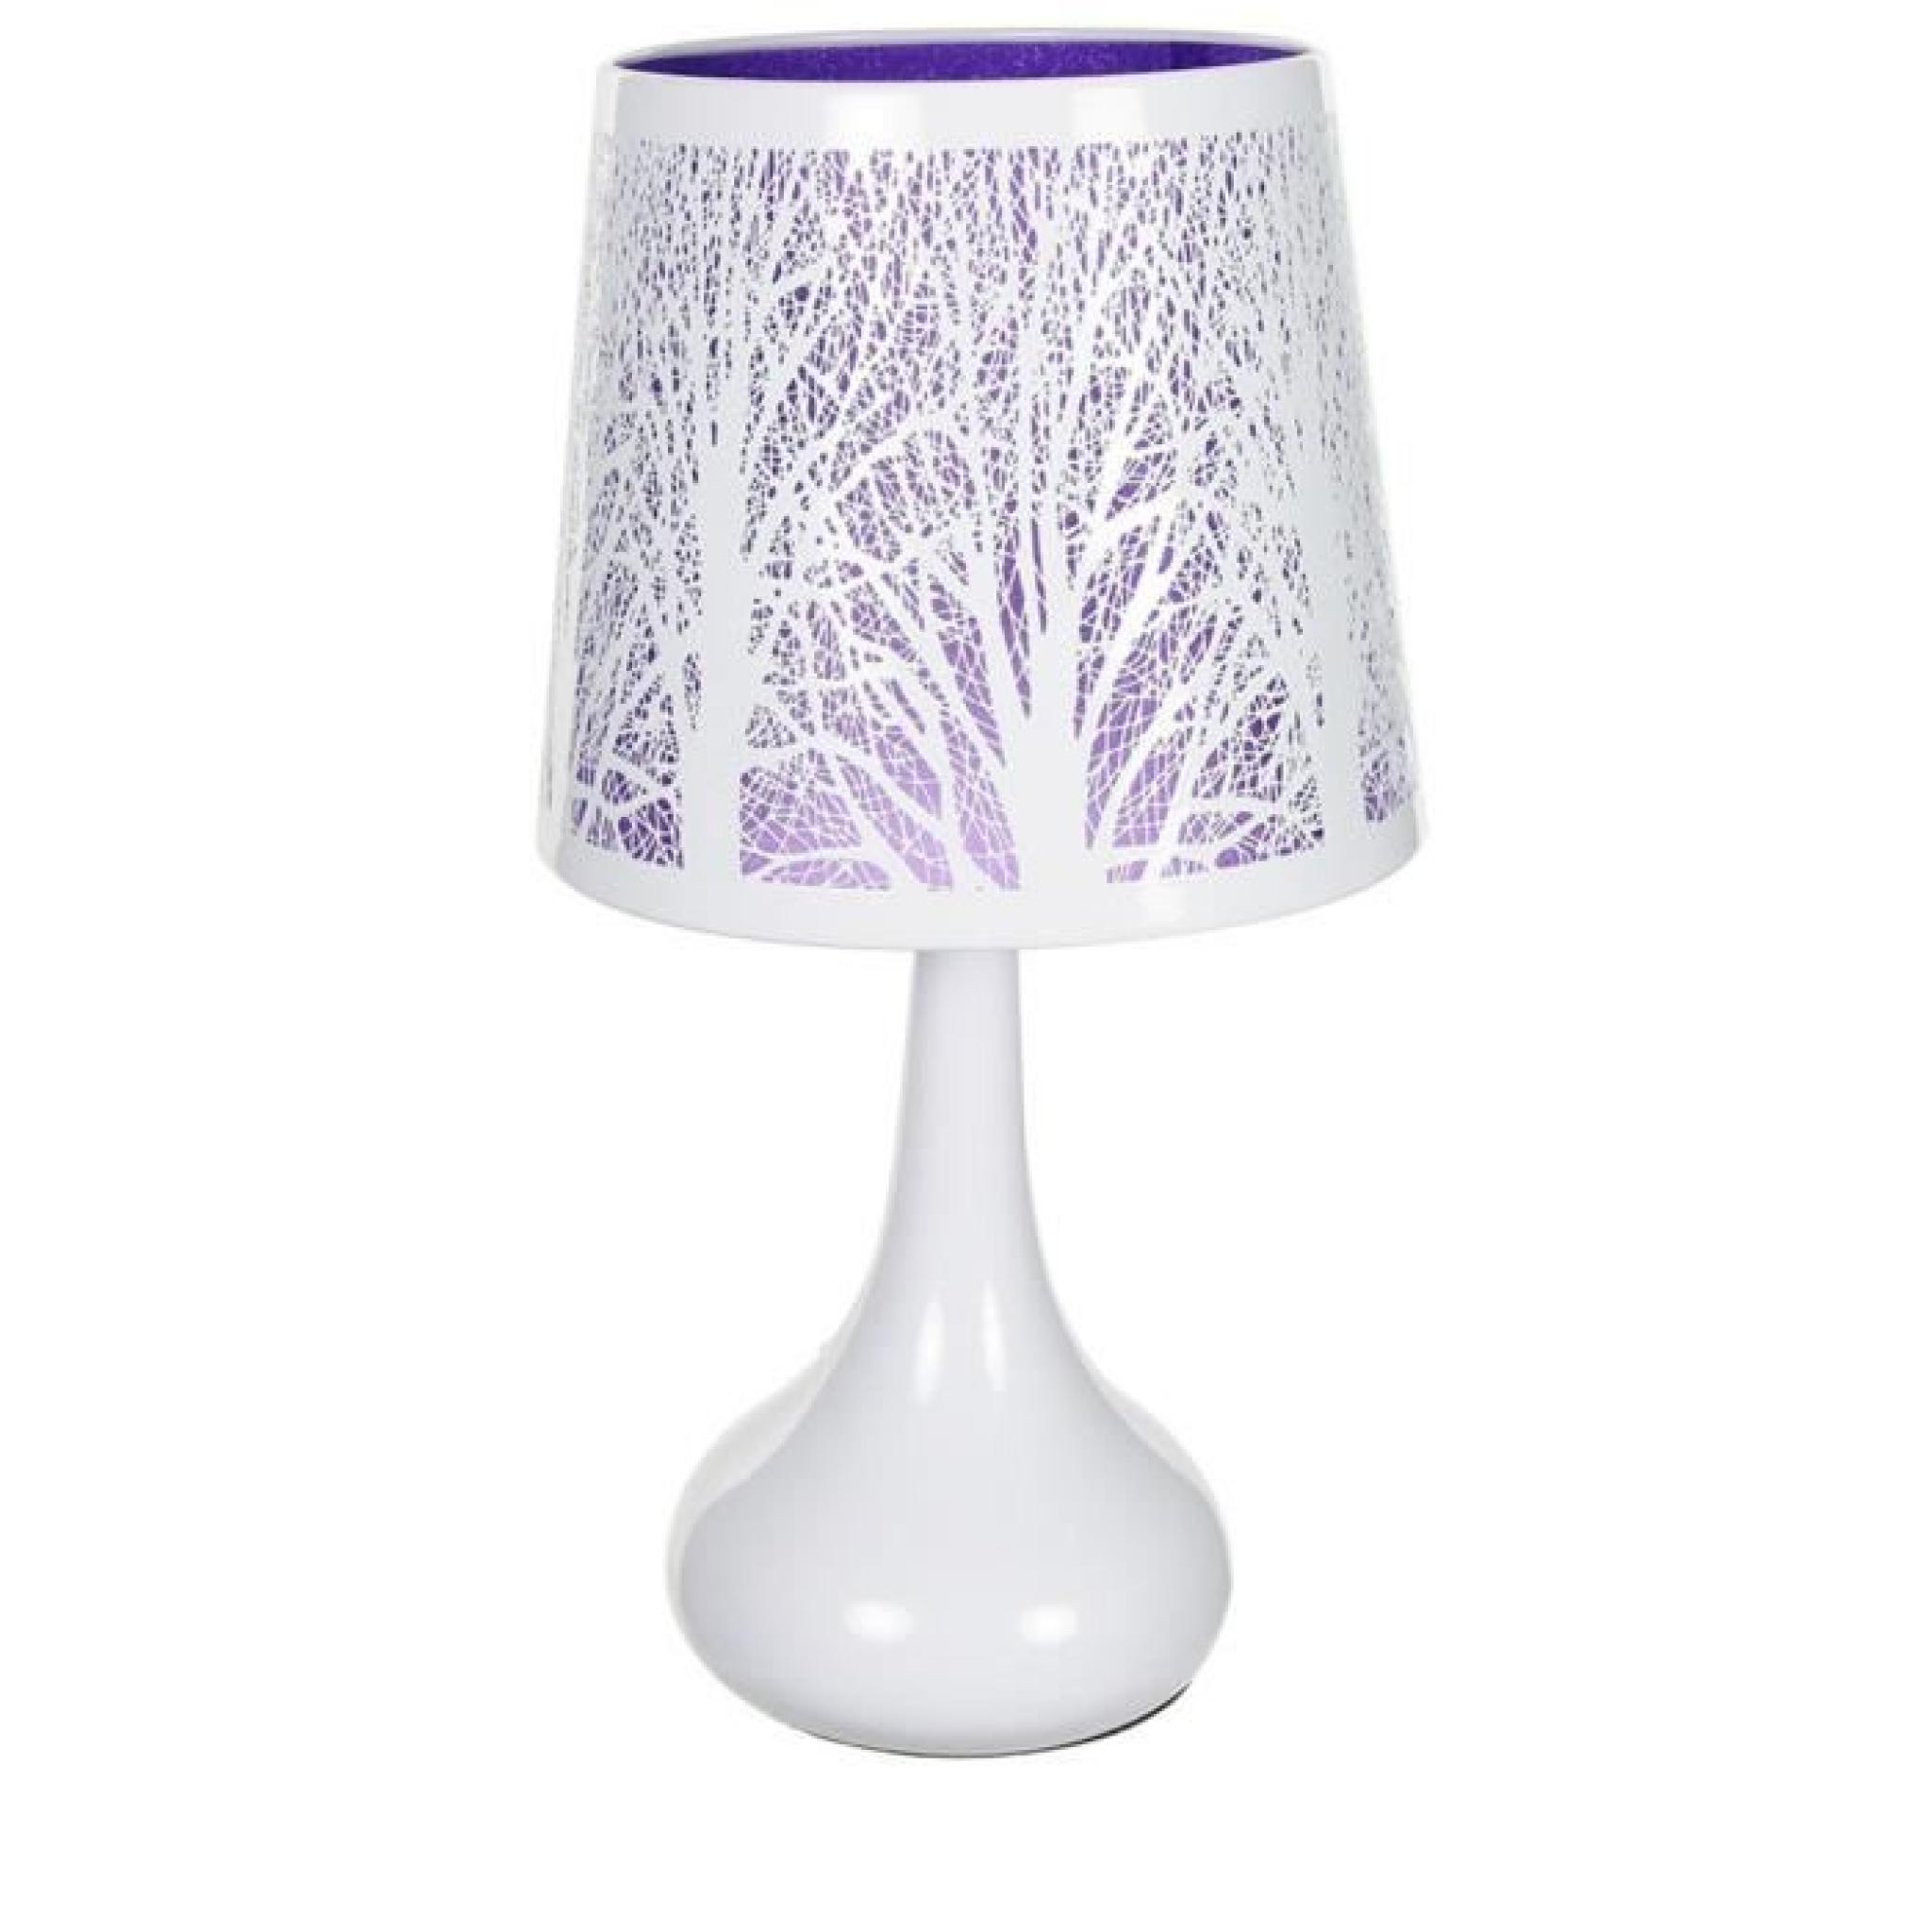 Lampe touch métal blanc motif arbre violet - 11615